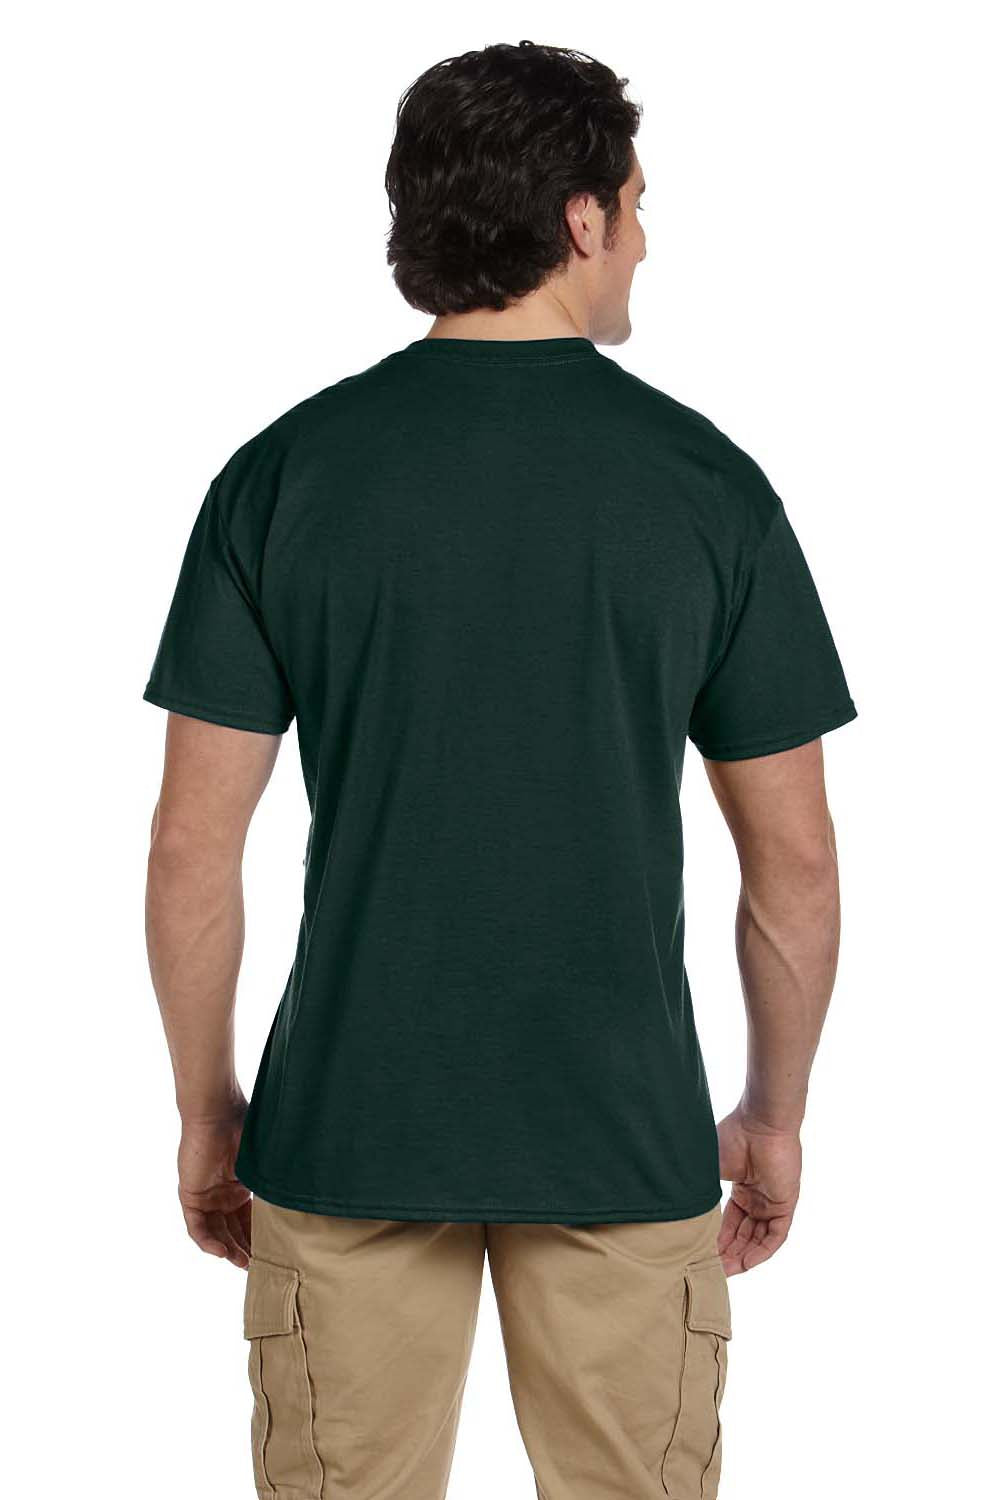 Gildan G830 Mens DryBlend Moisture Wicking Short Sleeve Crewneck T-Shirt w/ Pocket Forest Green Back